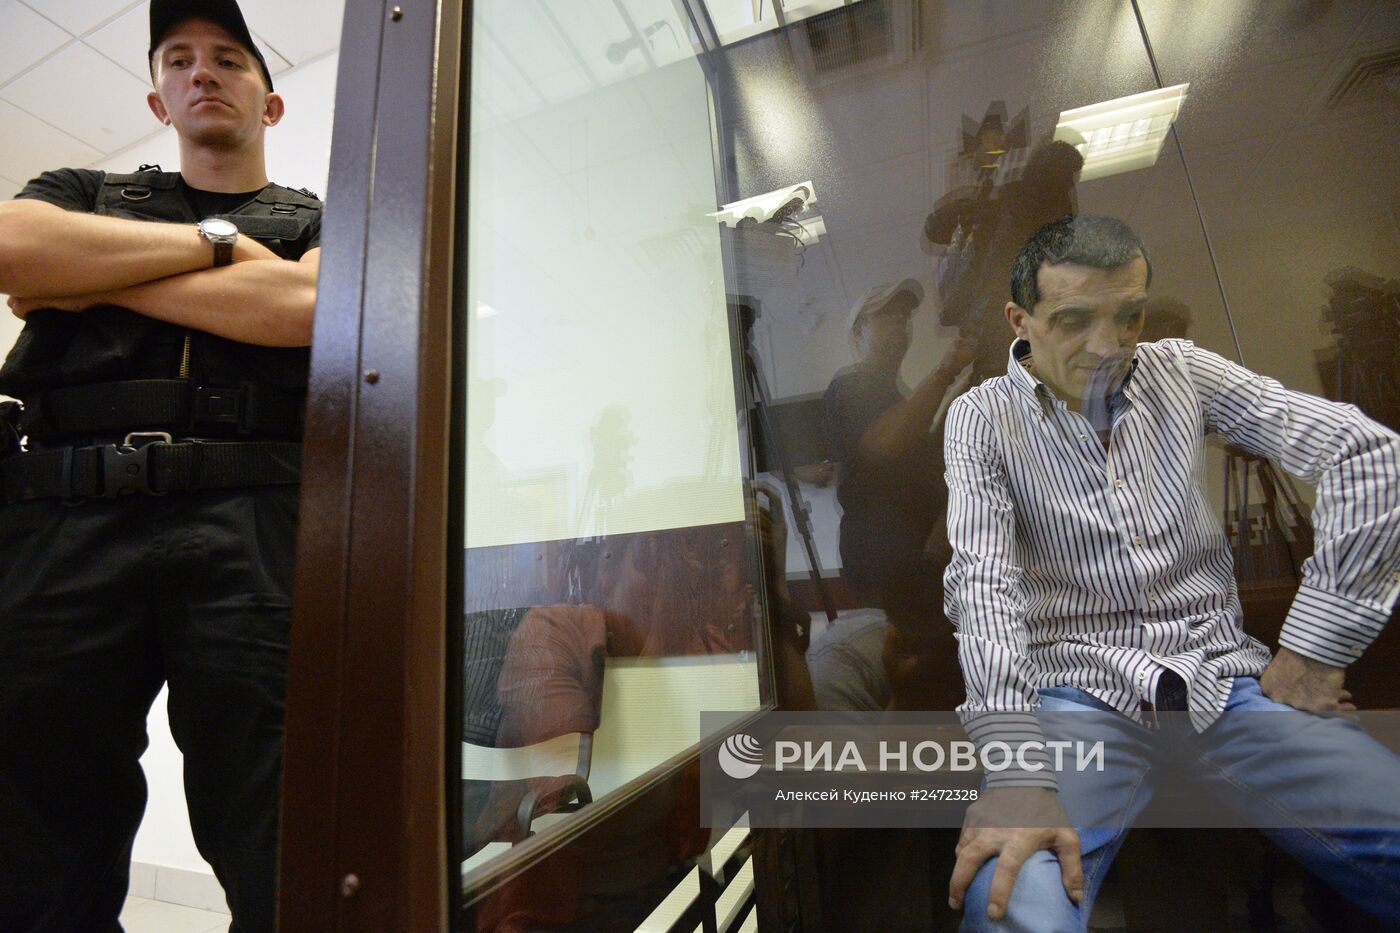 Оглашение приговора водителю КАМАЗа, столкнувшегося с автобусом под Подольском